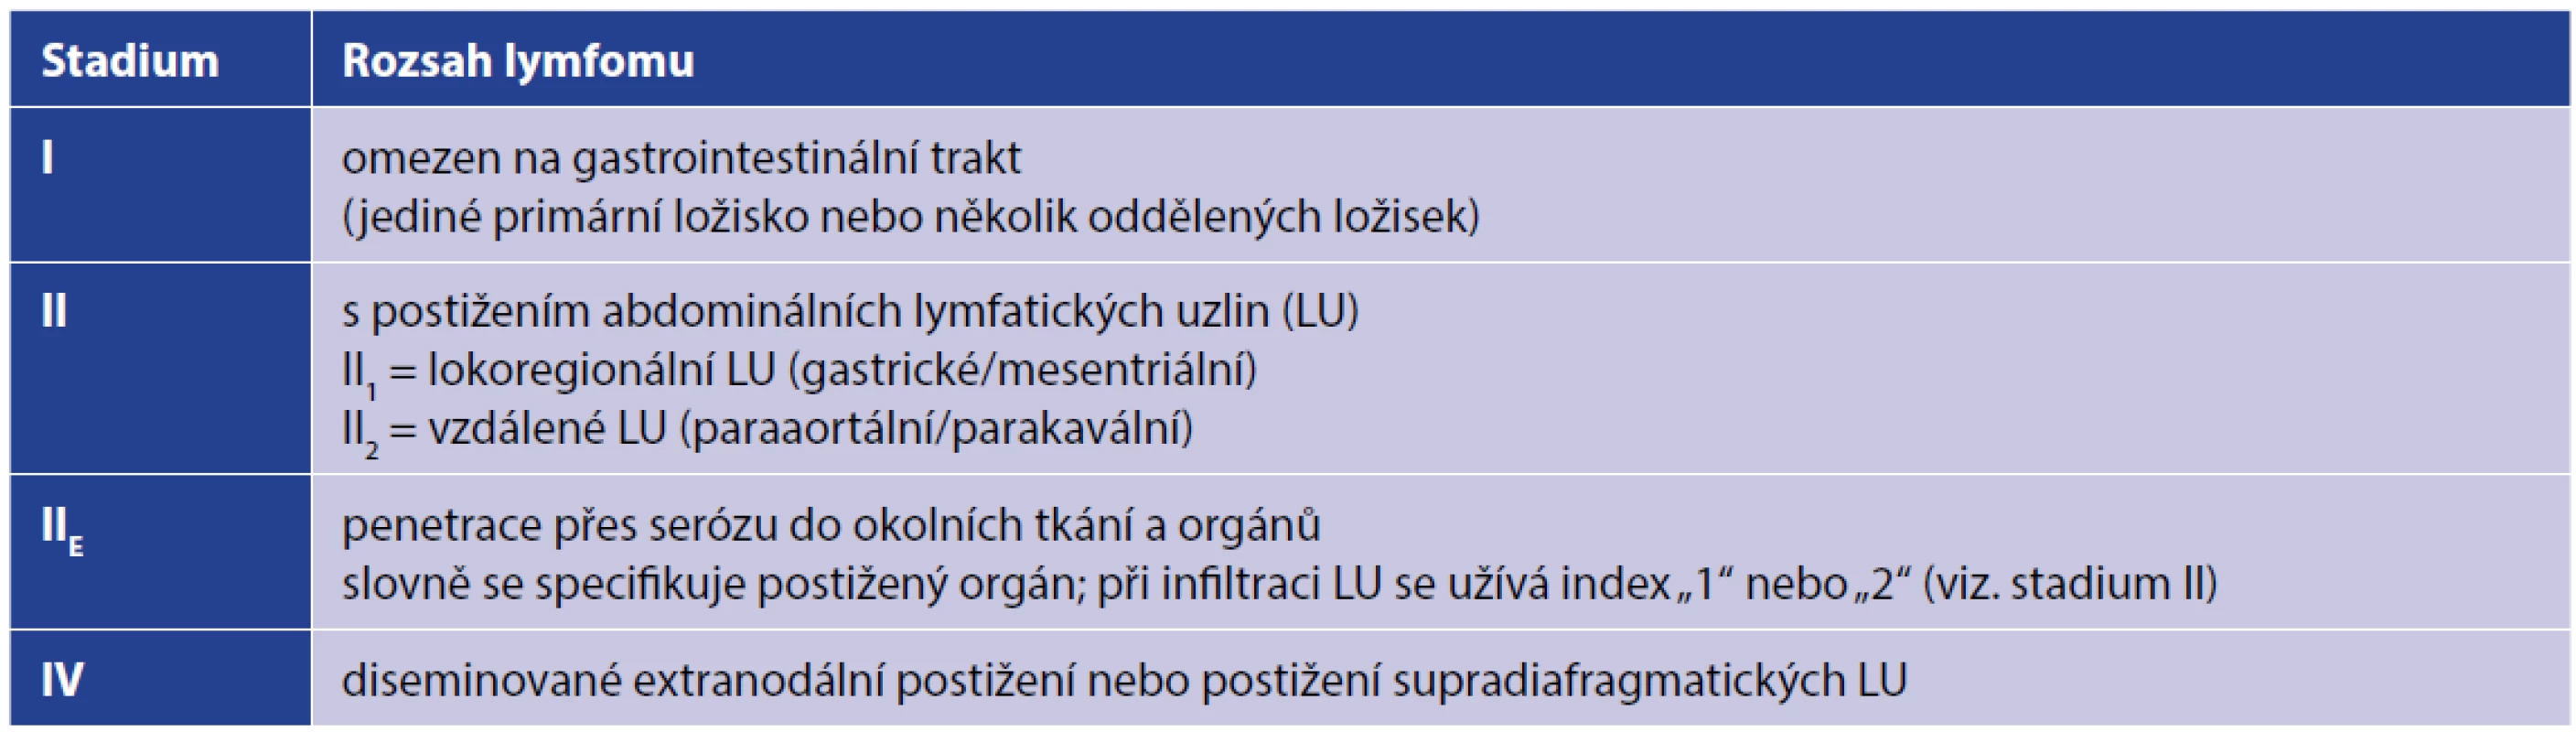 Modifikovaná klasifikace z r. 1994 pro gastrointestinální NHL [7]<br>
Tab. 1. Modified classification of gastrointestinal NHL from 1994 [7]